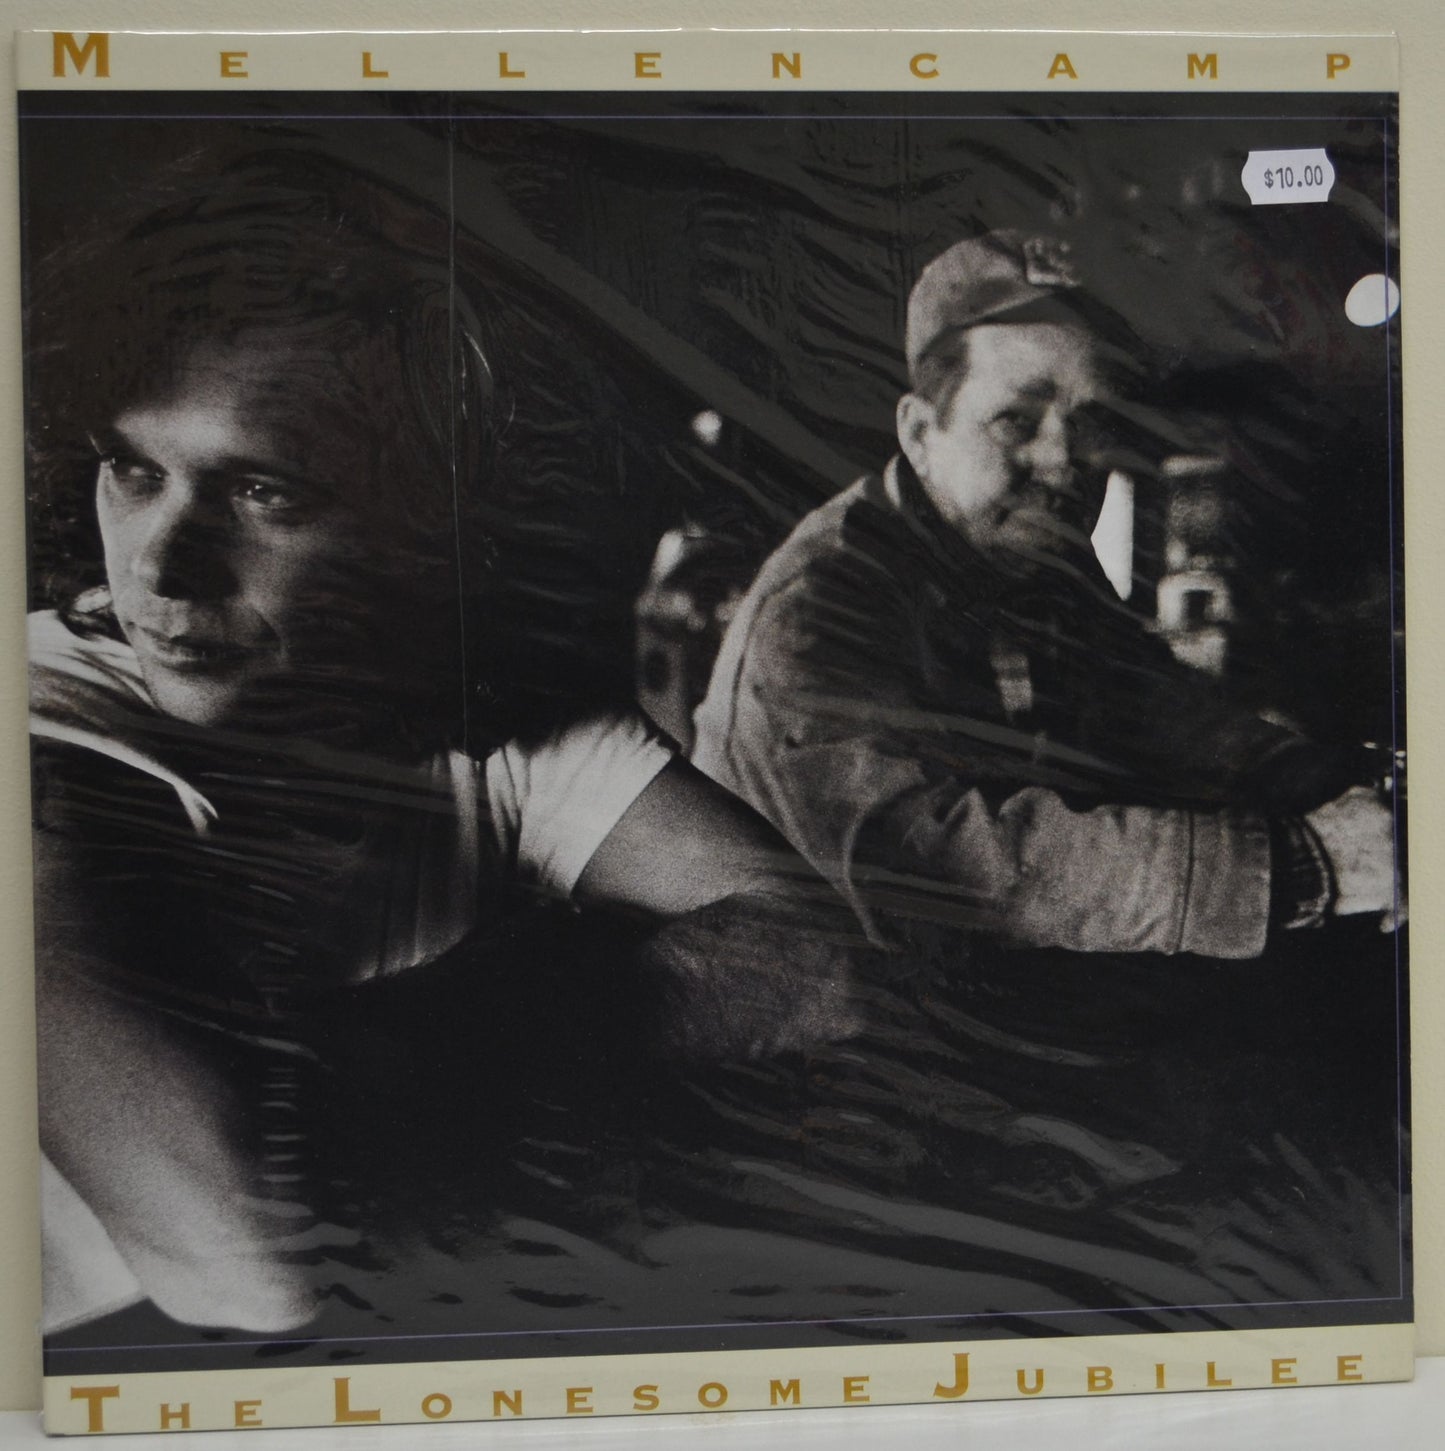 John Cougar Mellencamp - The Lonesome Jubilee- 1987 Southern Rock (Vinyl) Near Mint